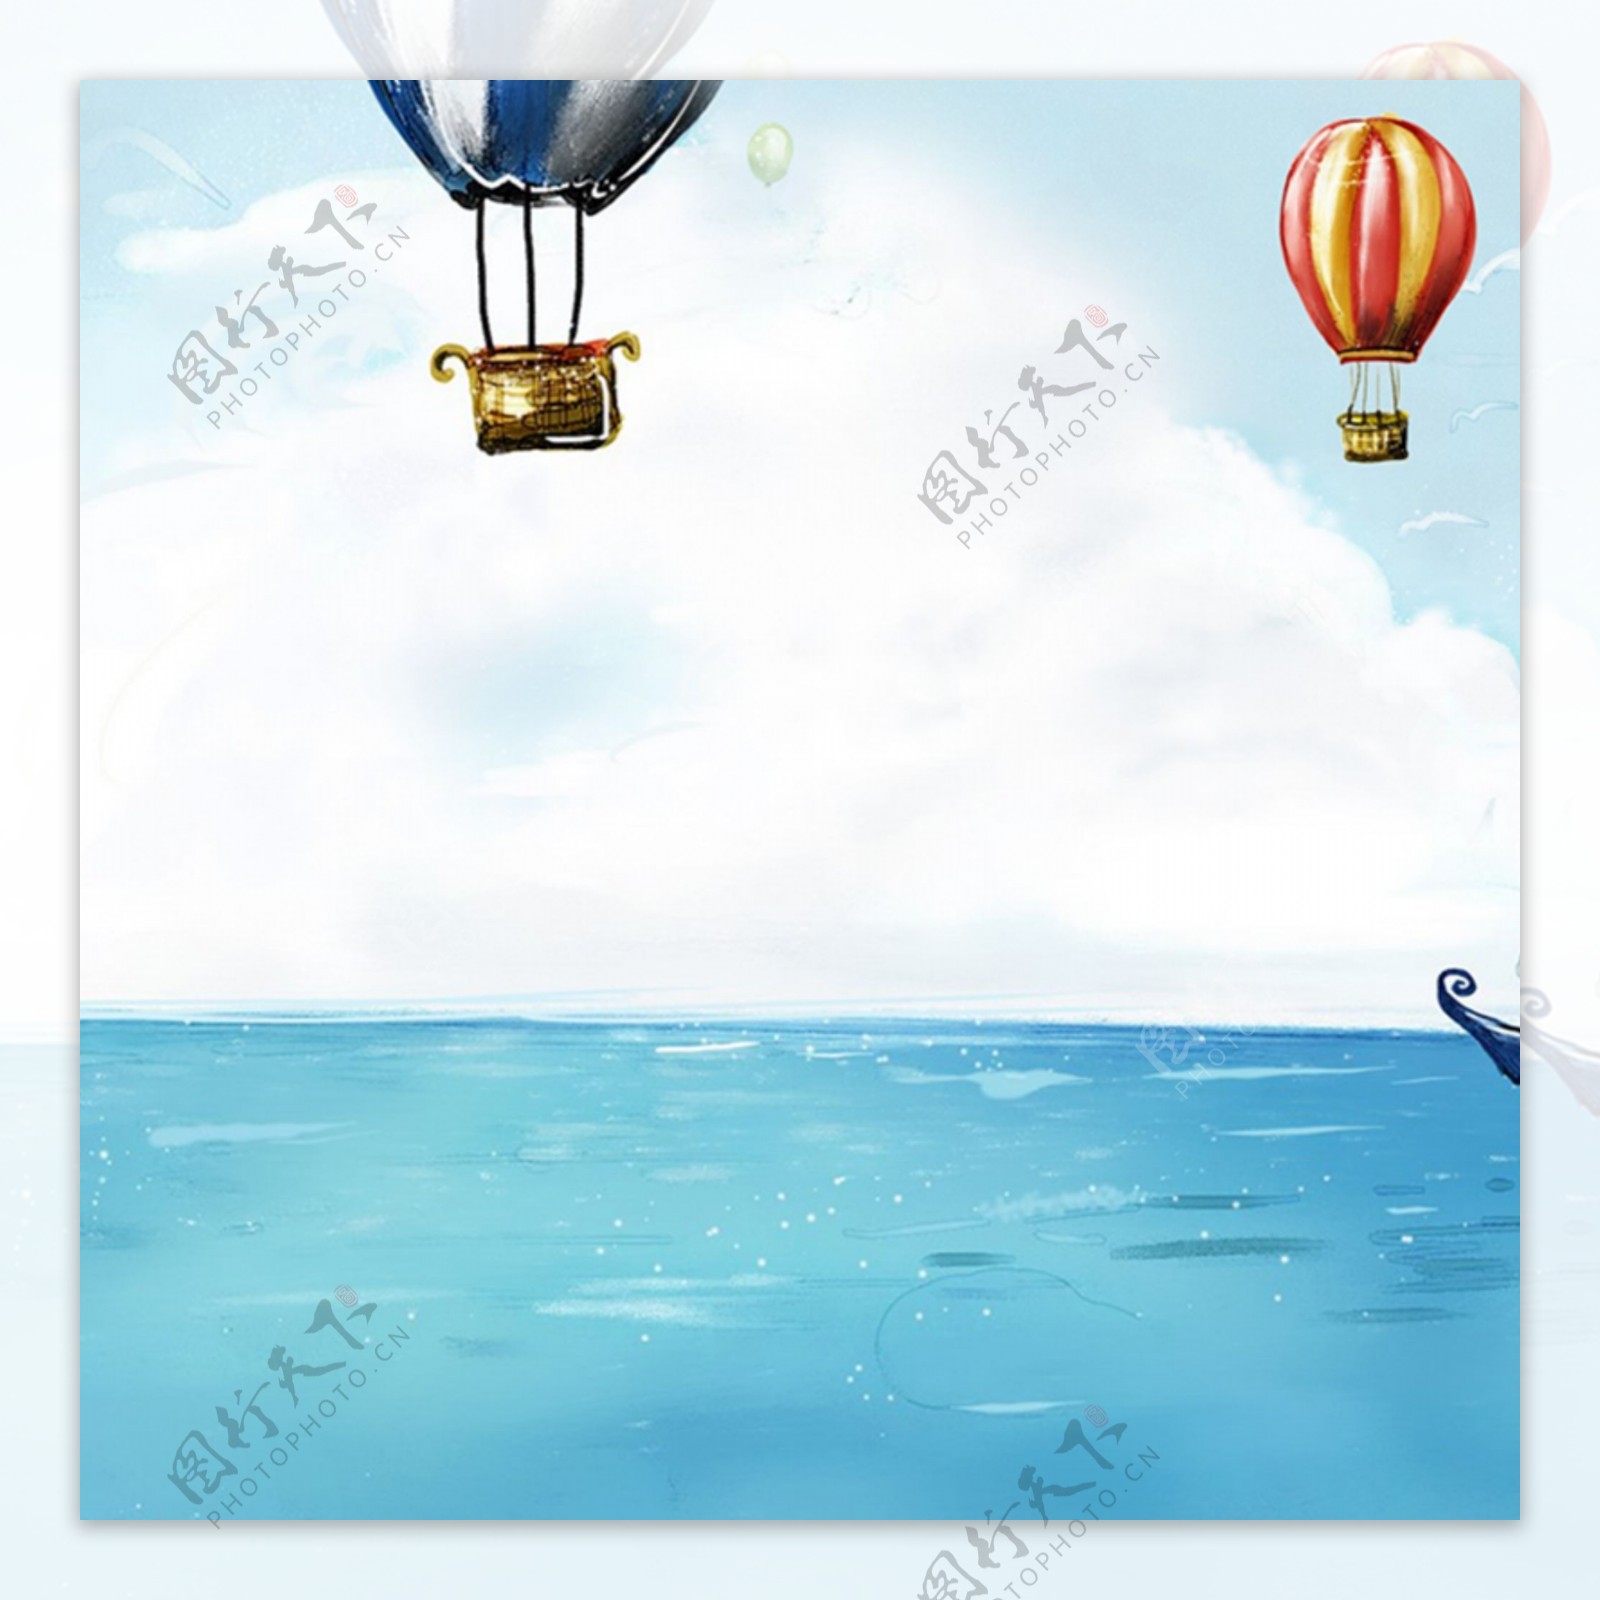 卡通手绘海景气球背景